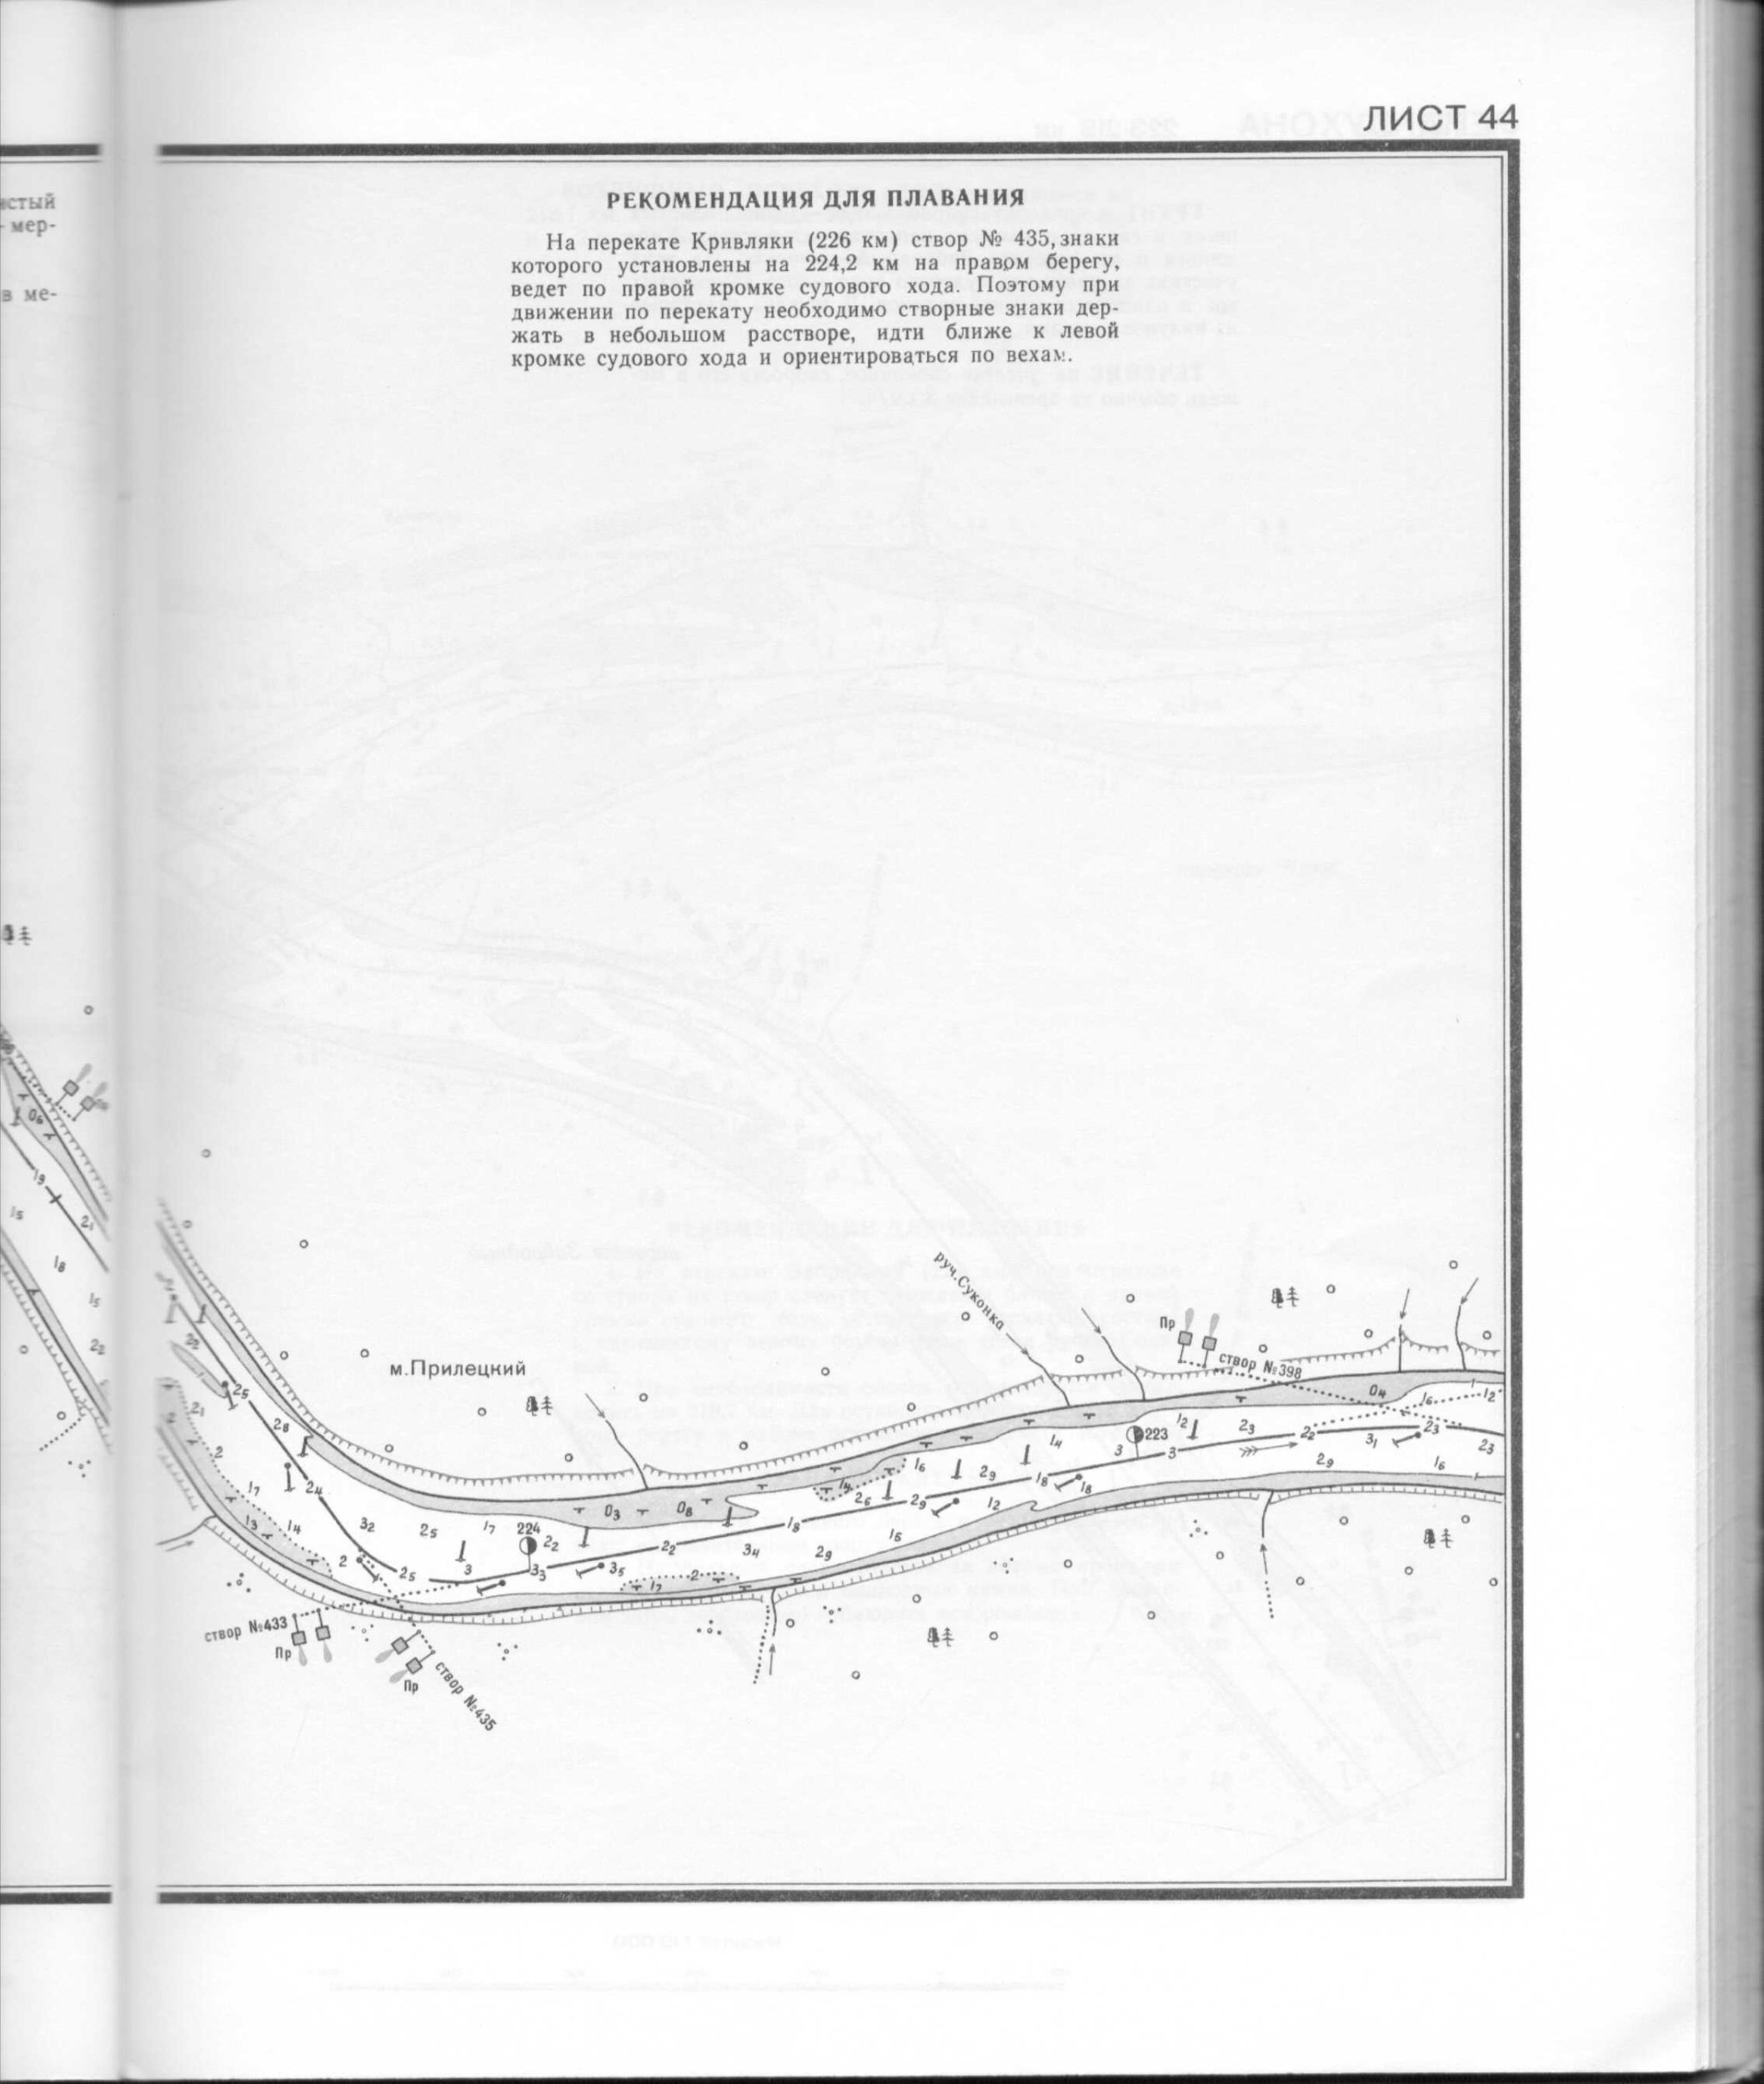 Уровень воды в реке сухона. Схема реки Сухоны. Река Сухона на карте. Карты лоции река Сухона. Лоцманская карта реки Сухона.